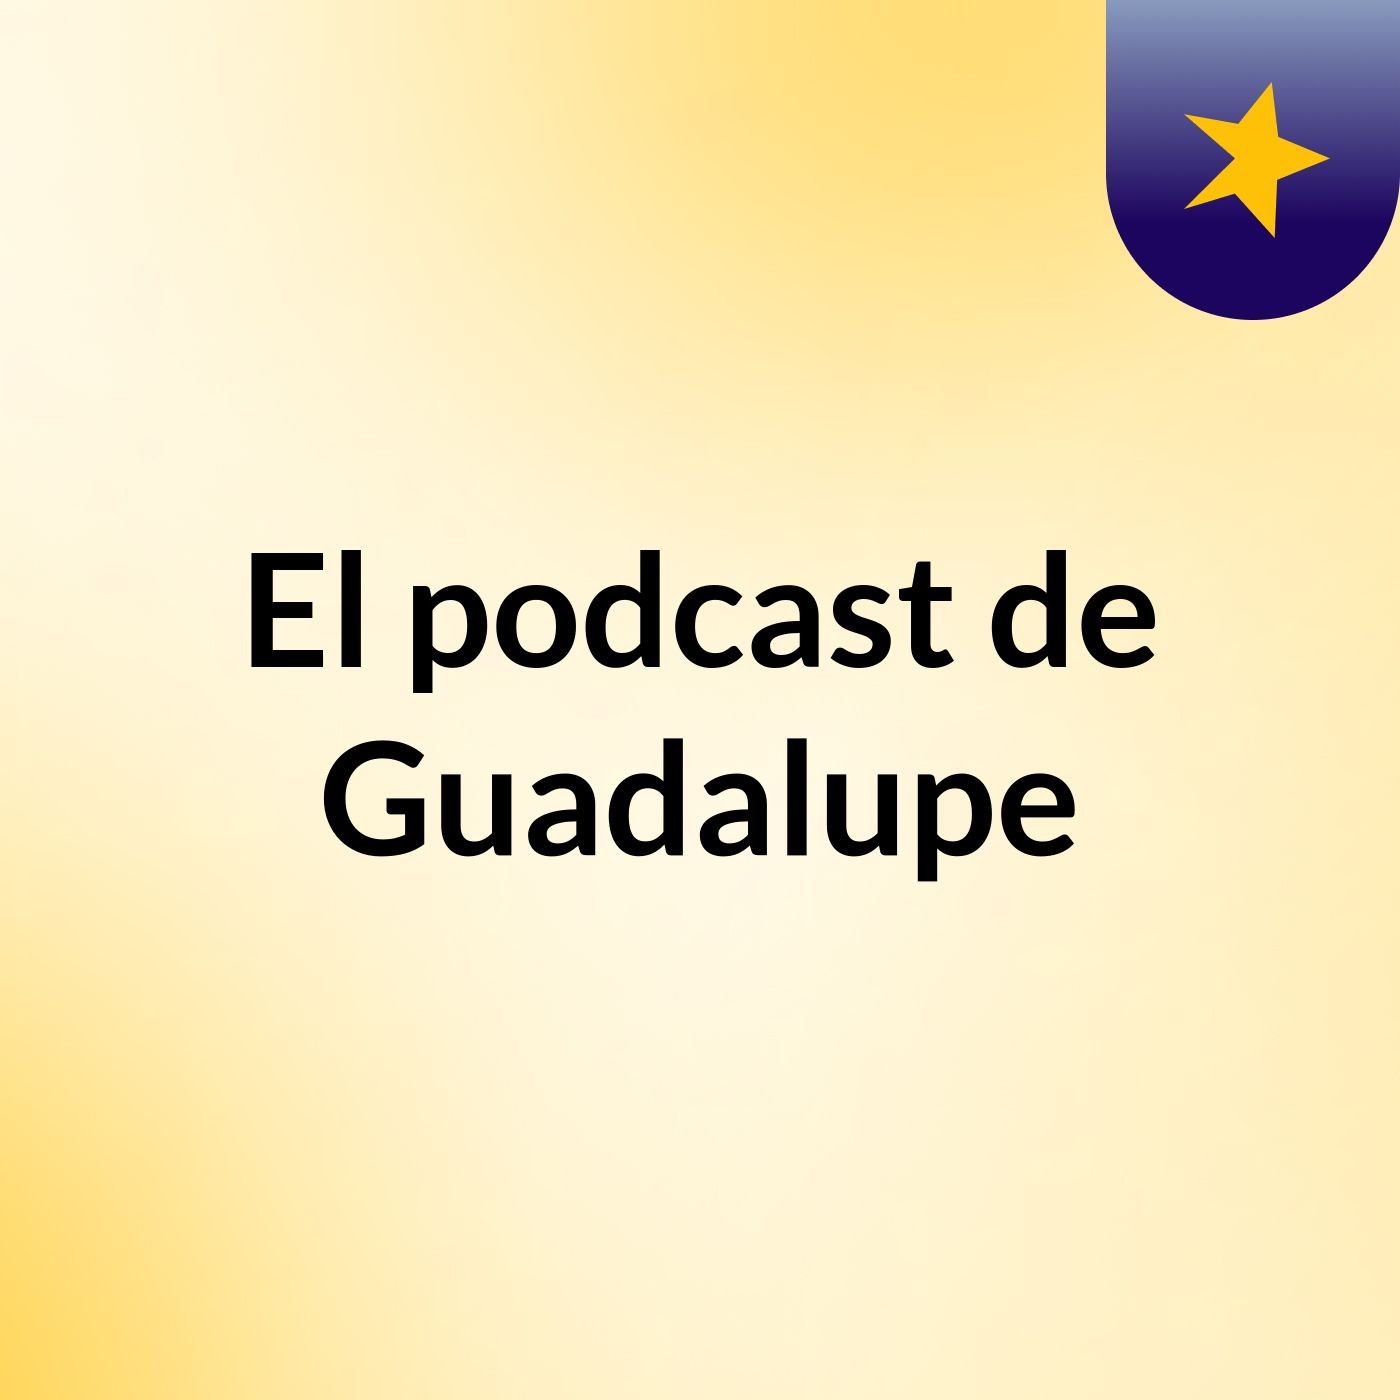 El podcast de Guadalupe